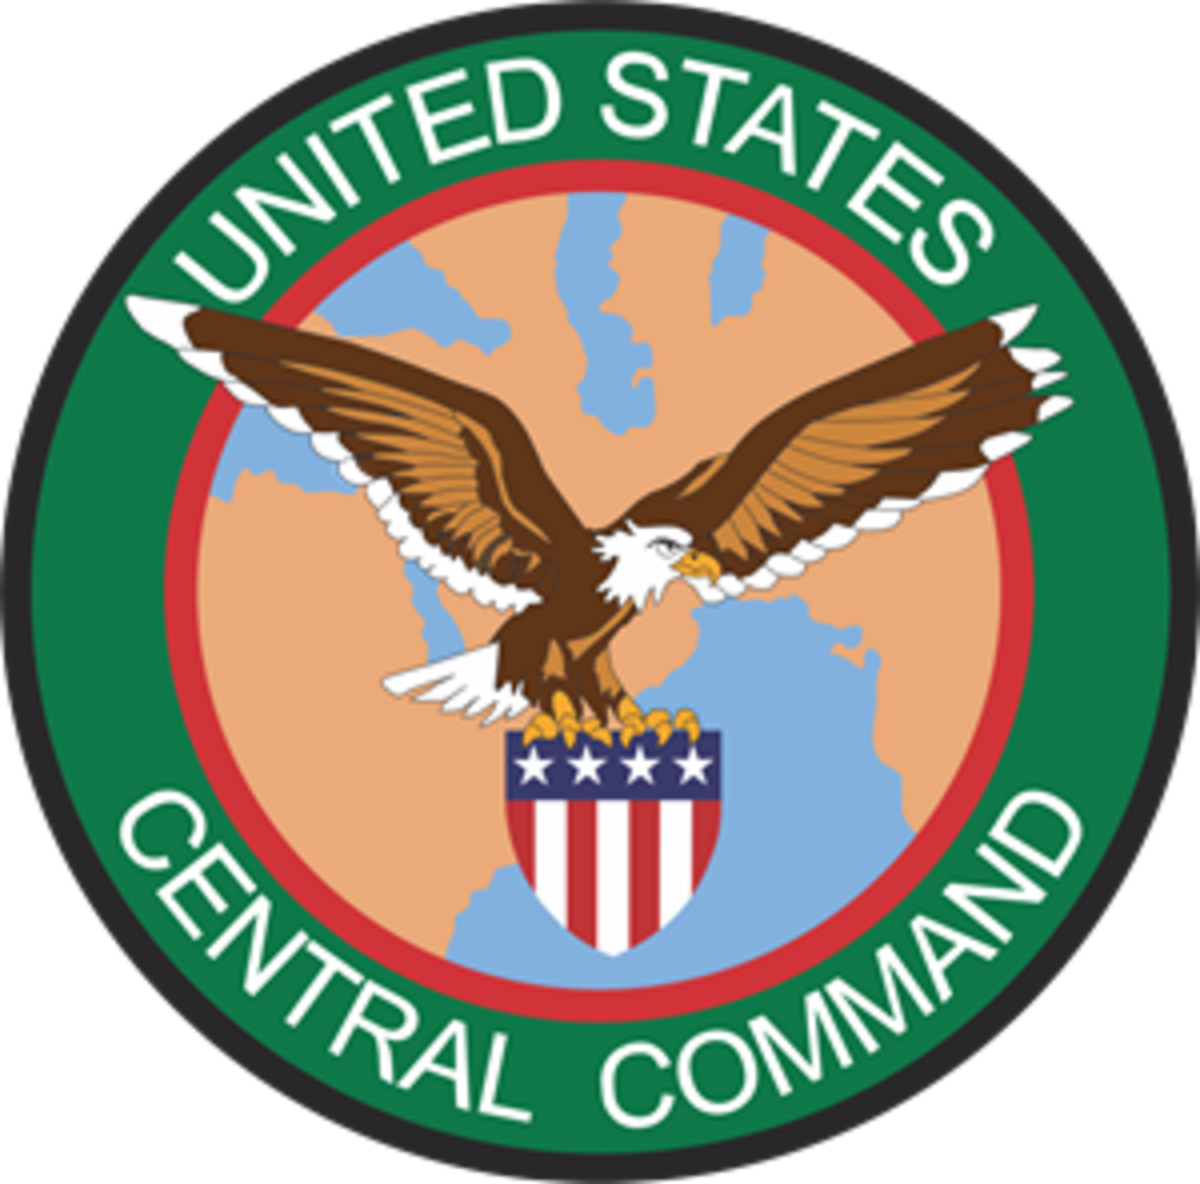 واشنگتن: حمله ارتش امریکا به پایگاه گروه مرتبط با سپاه در سوریه